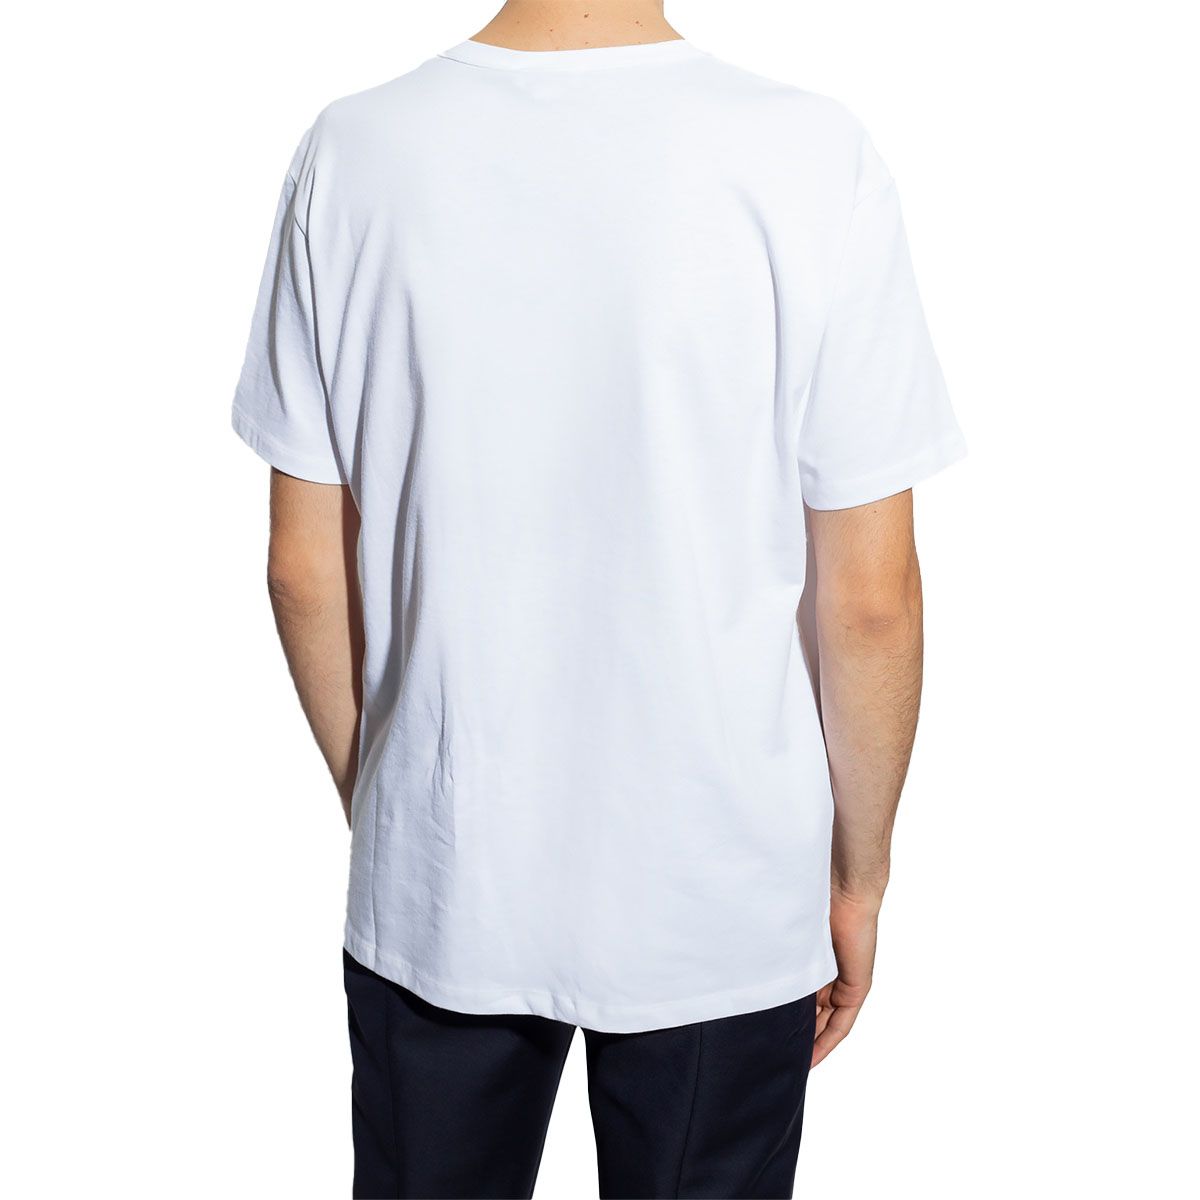 Skeleton-Print Short-Sleeved T-Shirt